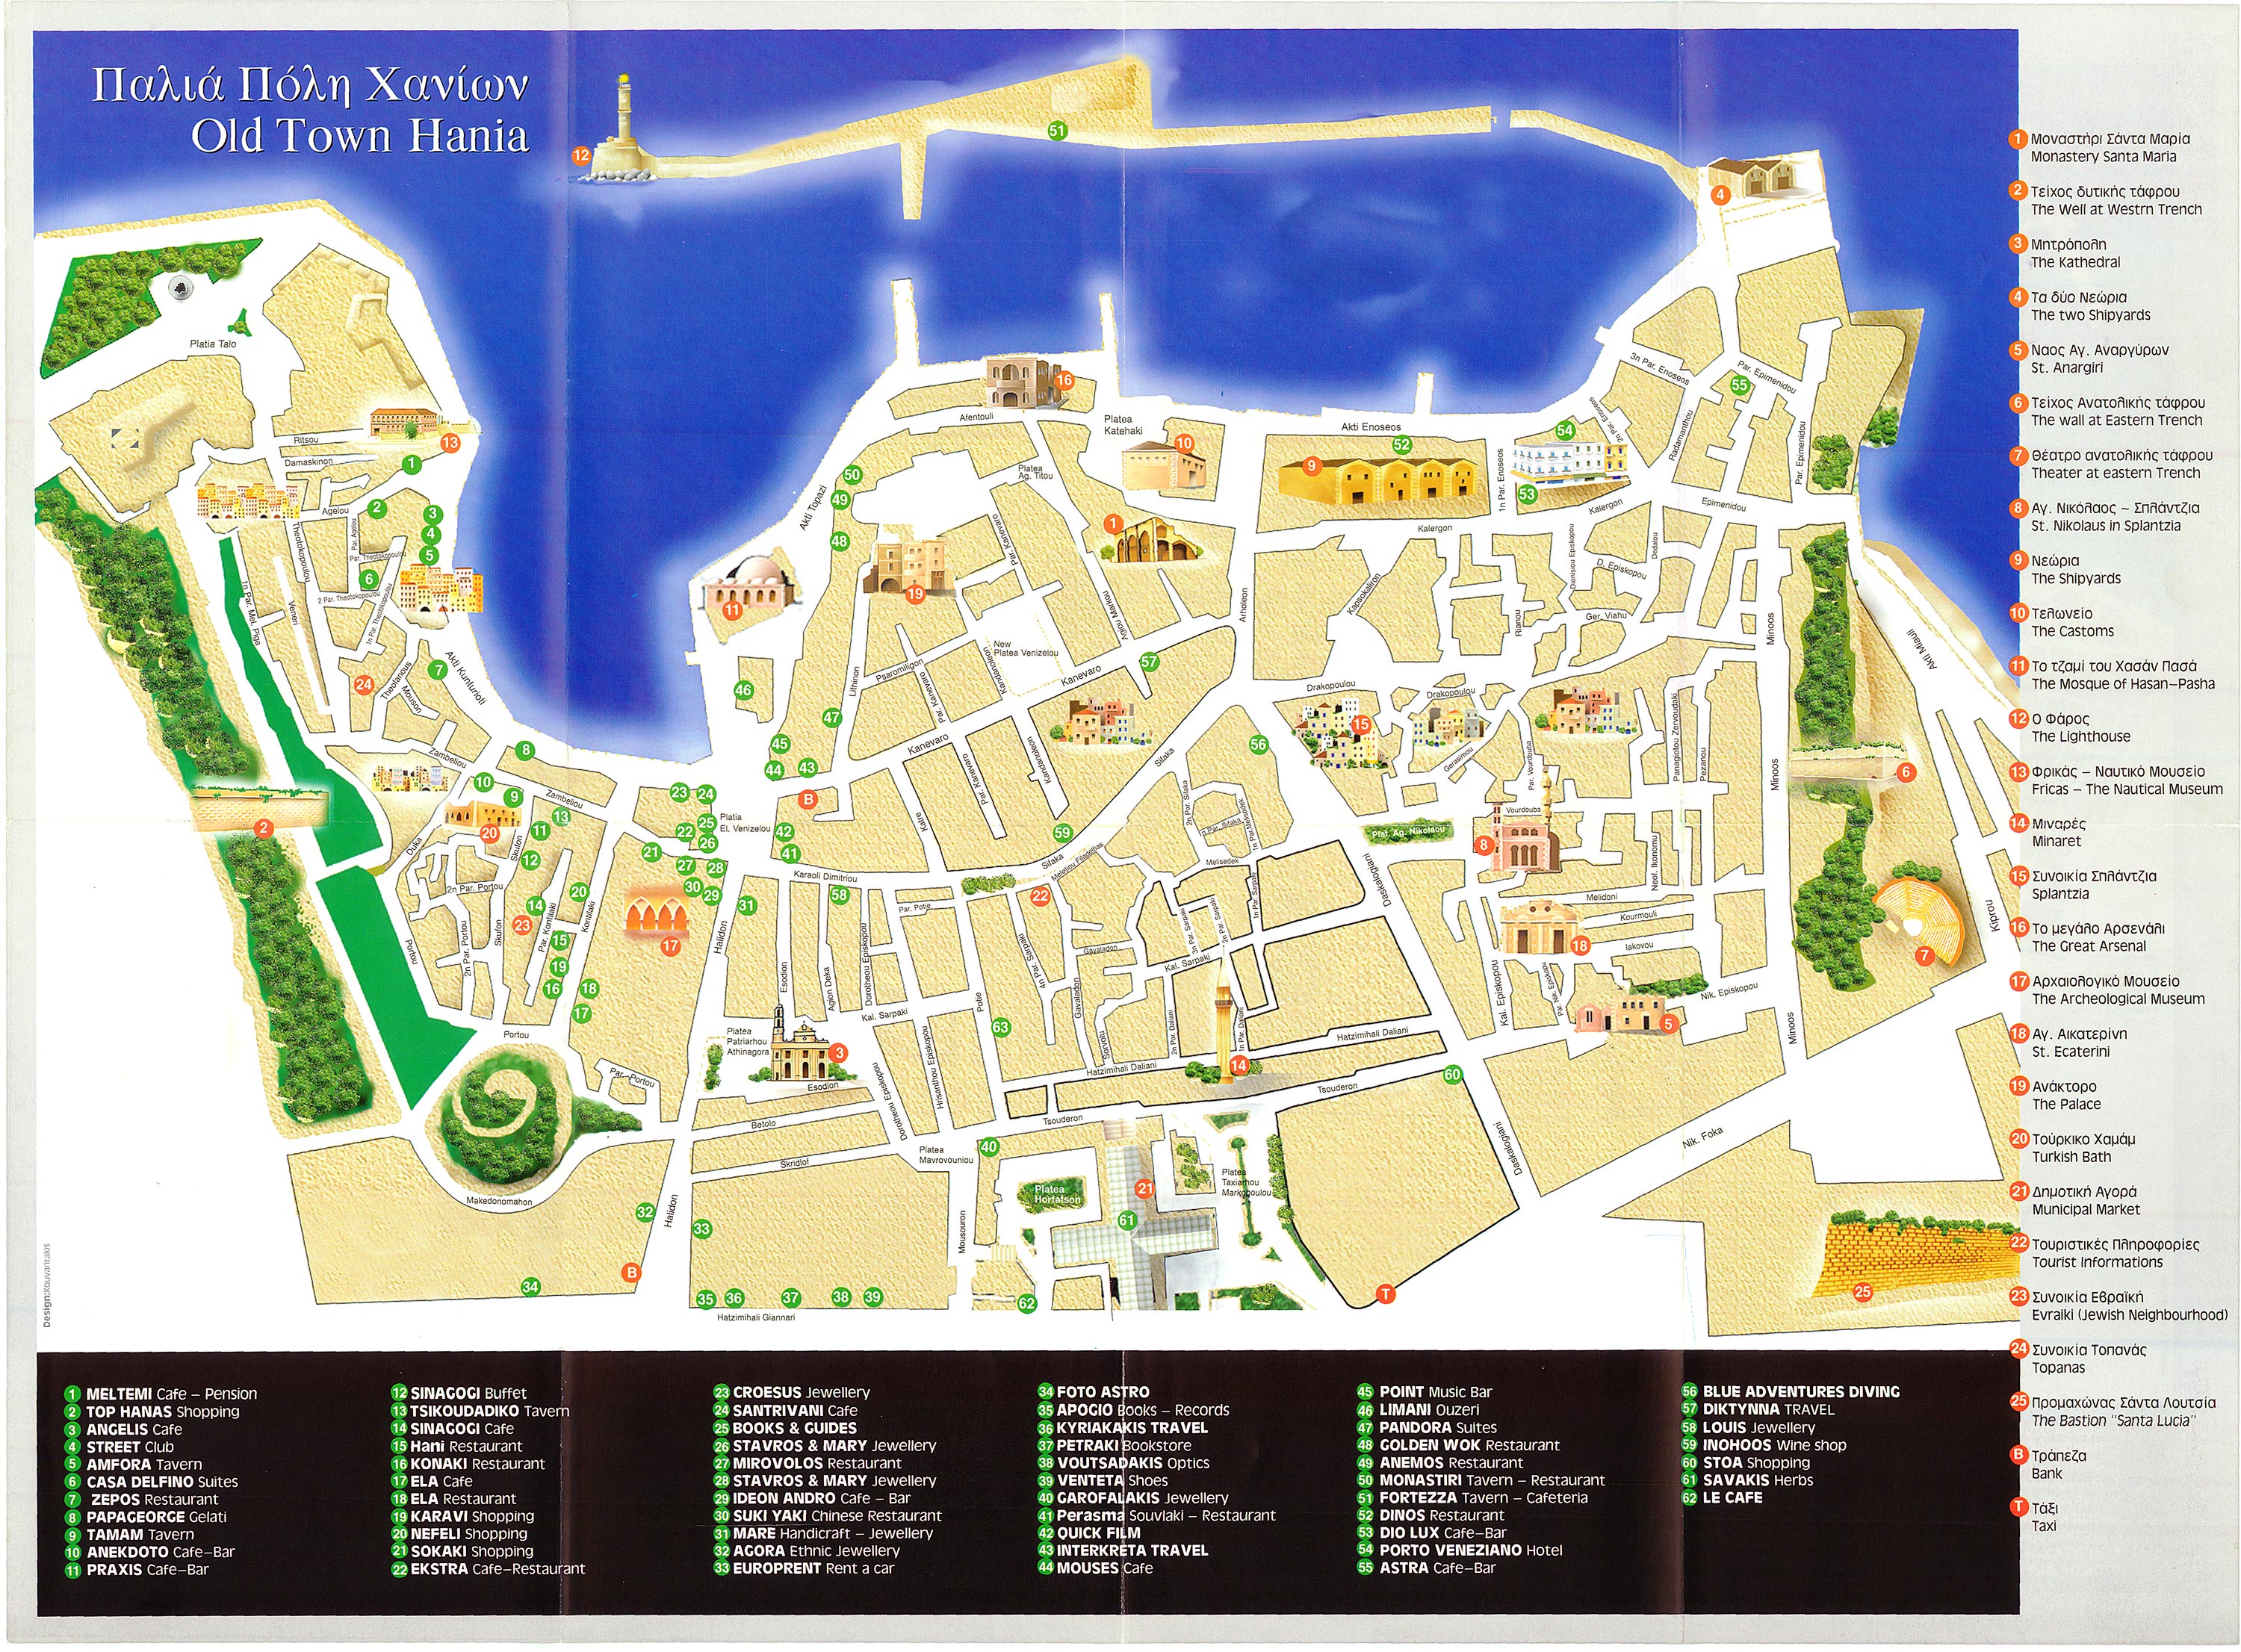 Χάρτης της παλιάς πόλης των Χανίων με όλα τα αξιοθέατα